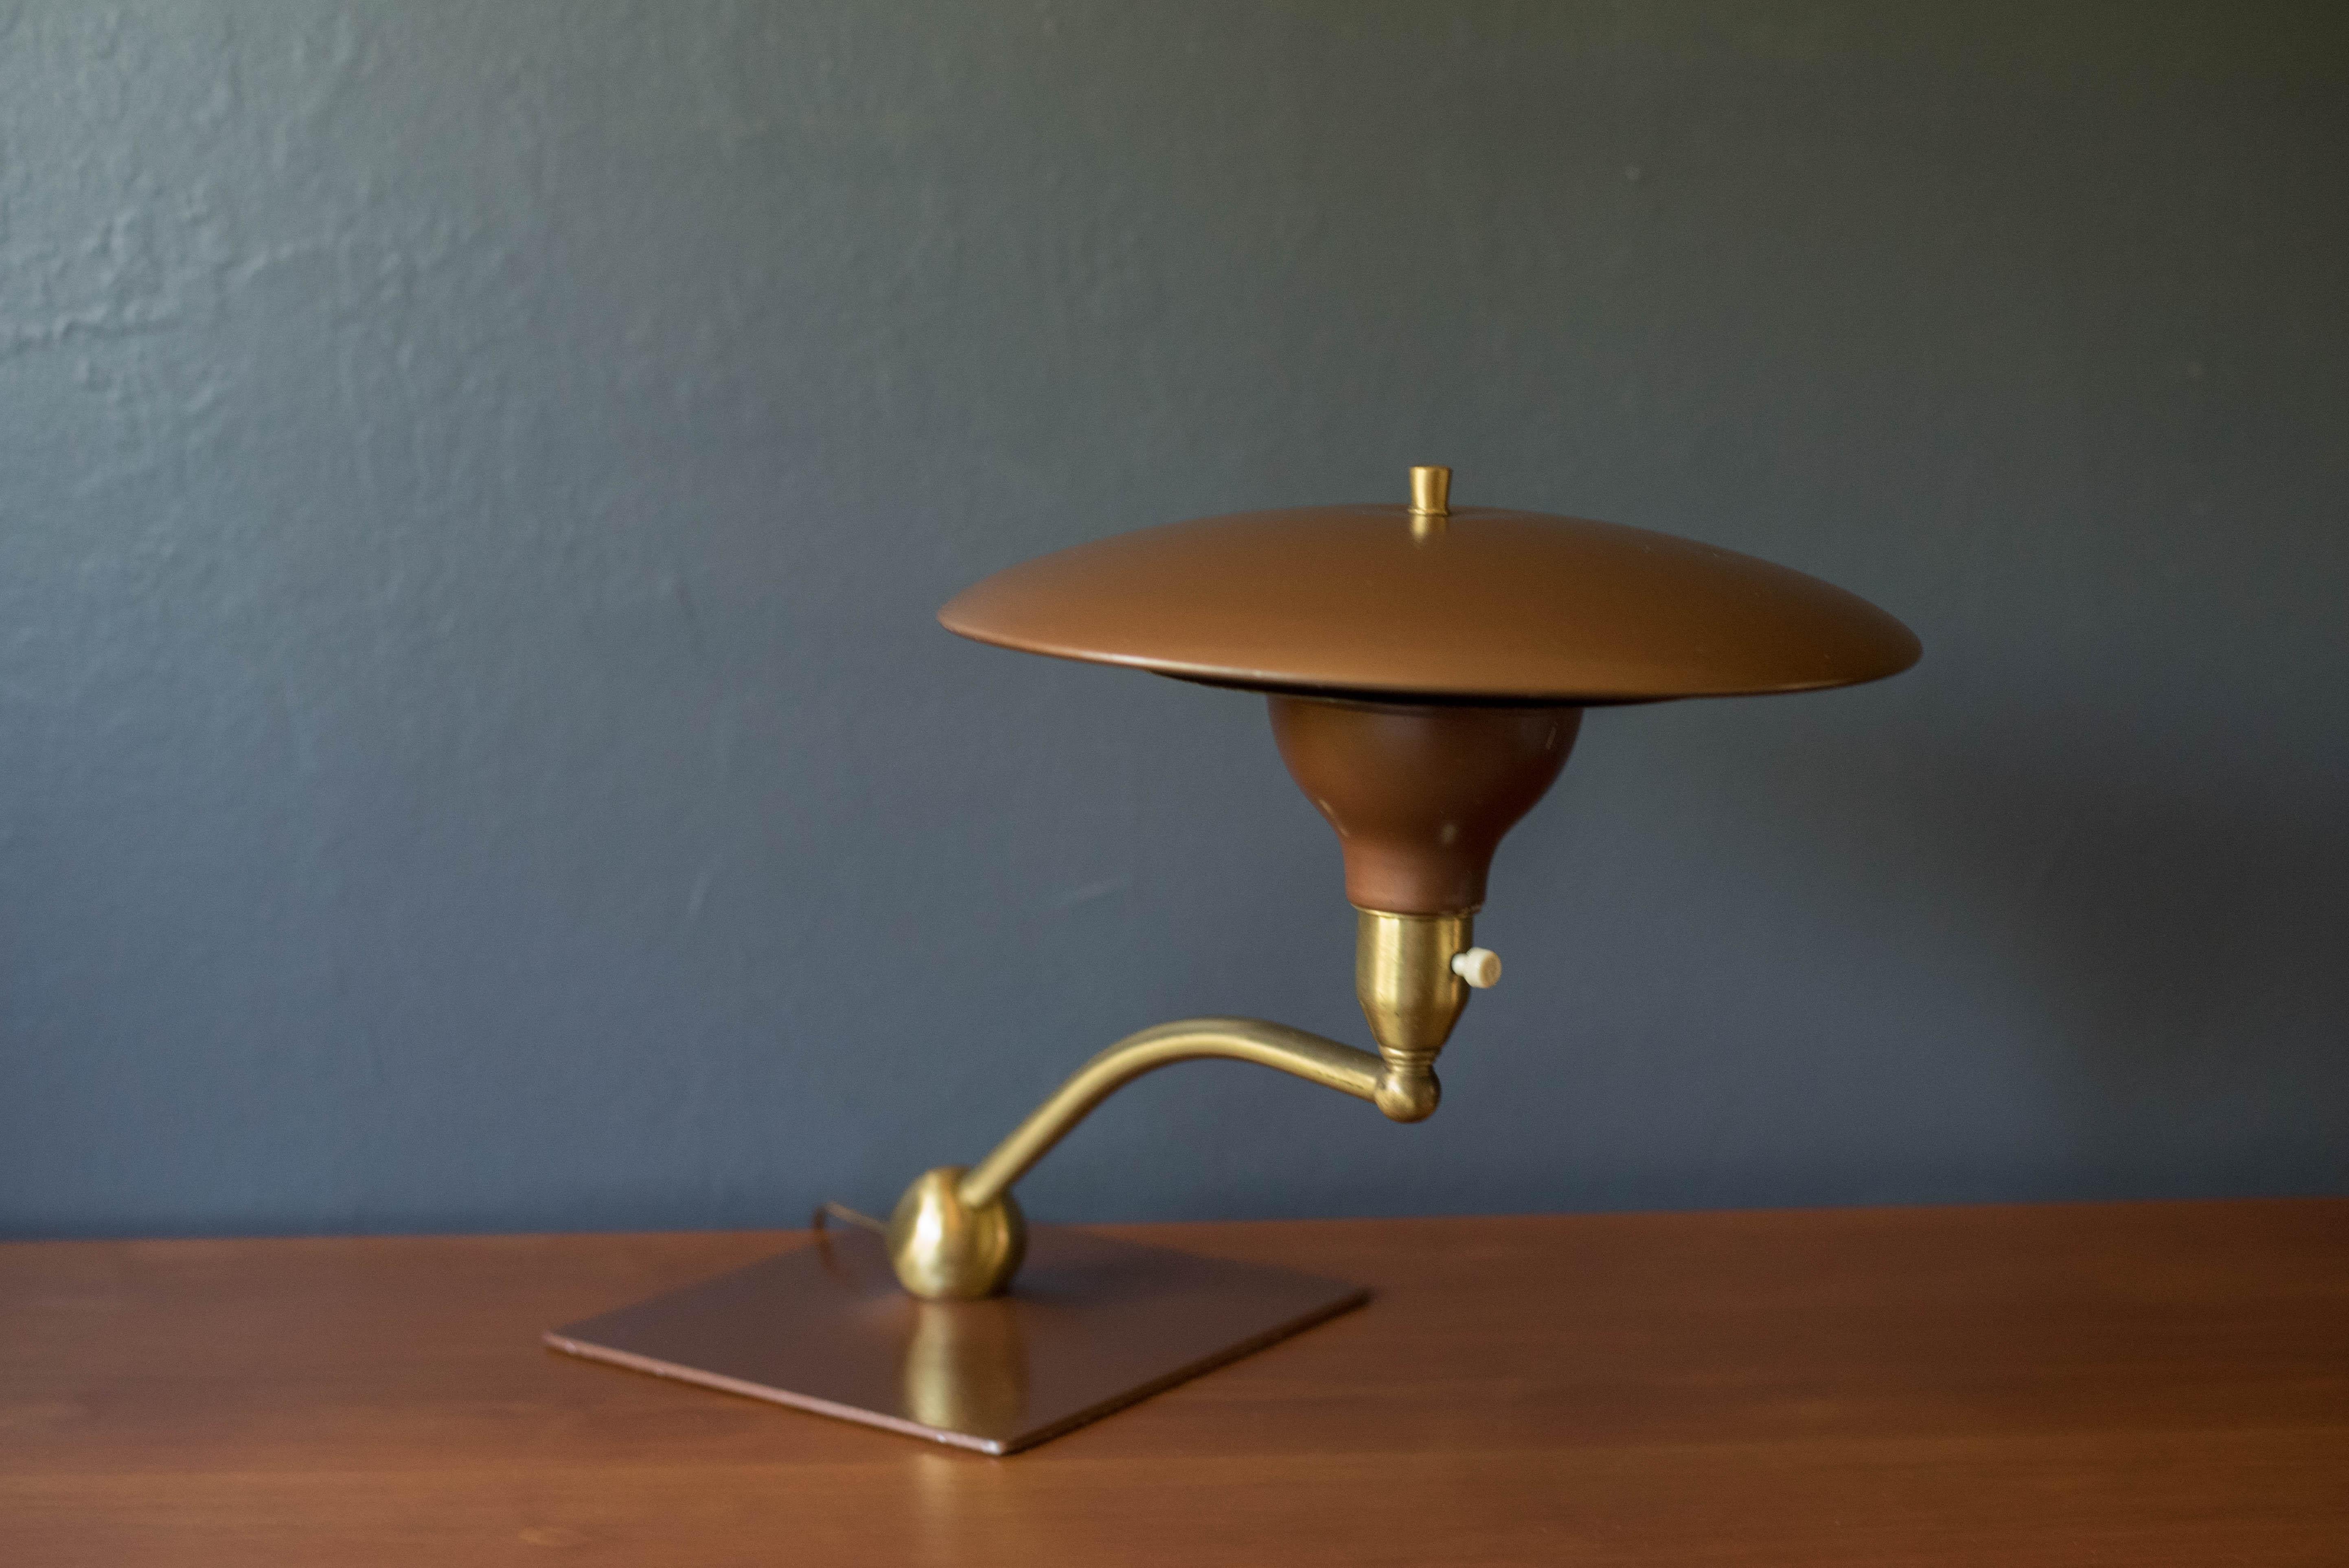 Lampe de bureau Vintage A&M, à lumière visible, fabriquée par M.G. Wheeler Company, vers les années 1960. Il est doté d'un bras pivotant et d'une base en laiton lestée. Parfait pour une utilisation comme lampe de bureau ou lampe de lecture. Cette